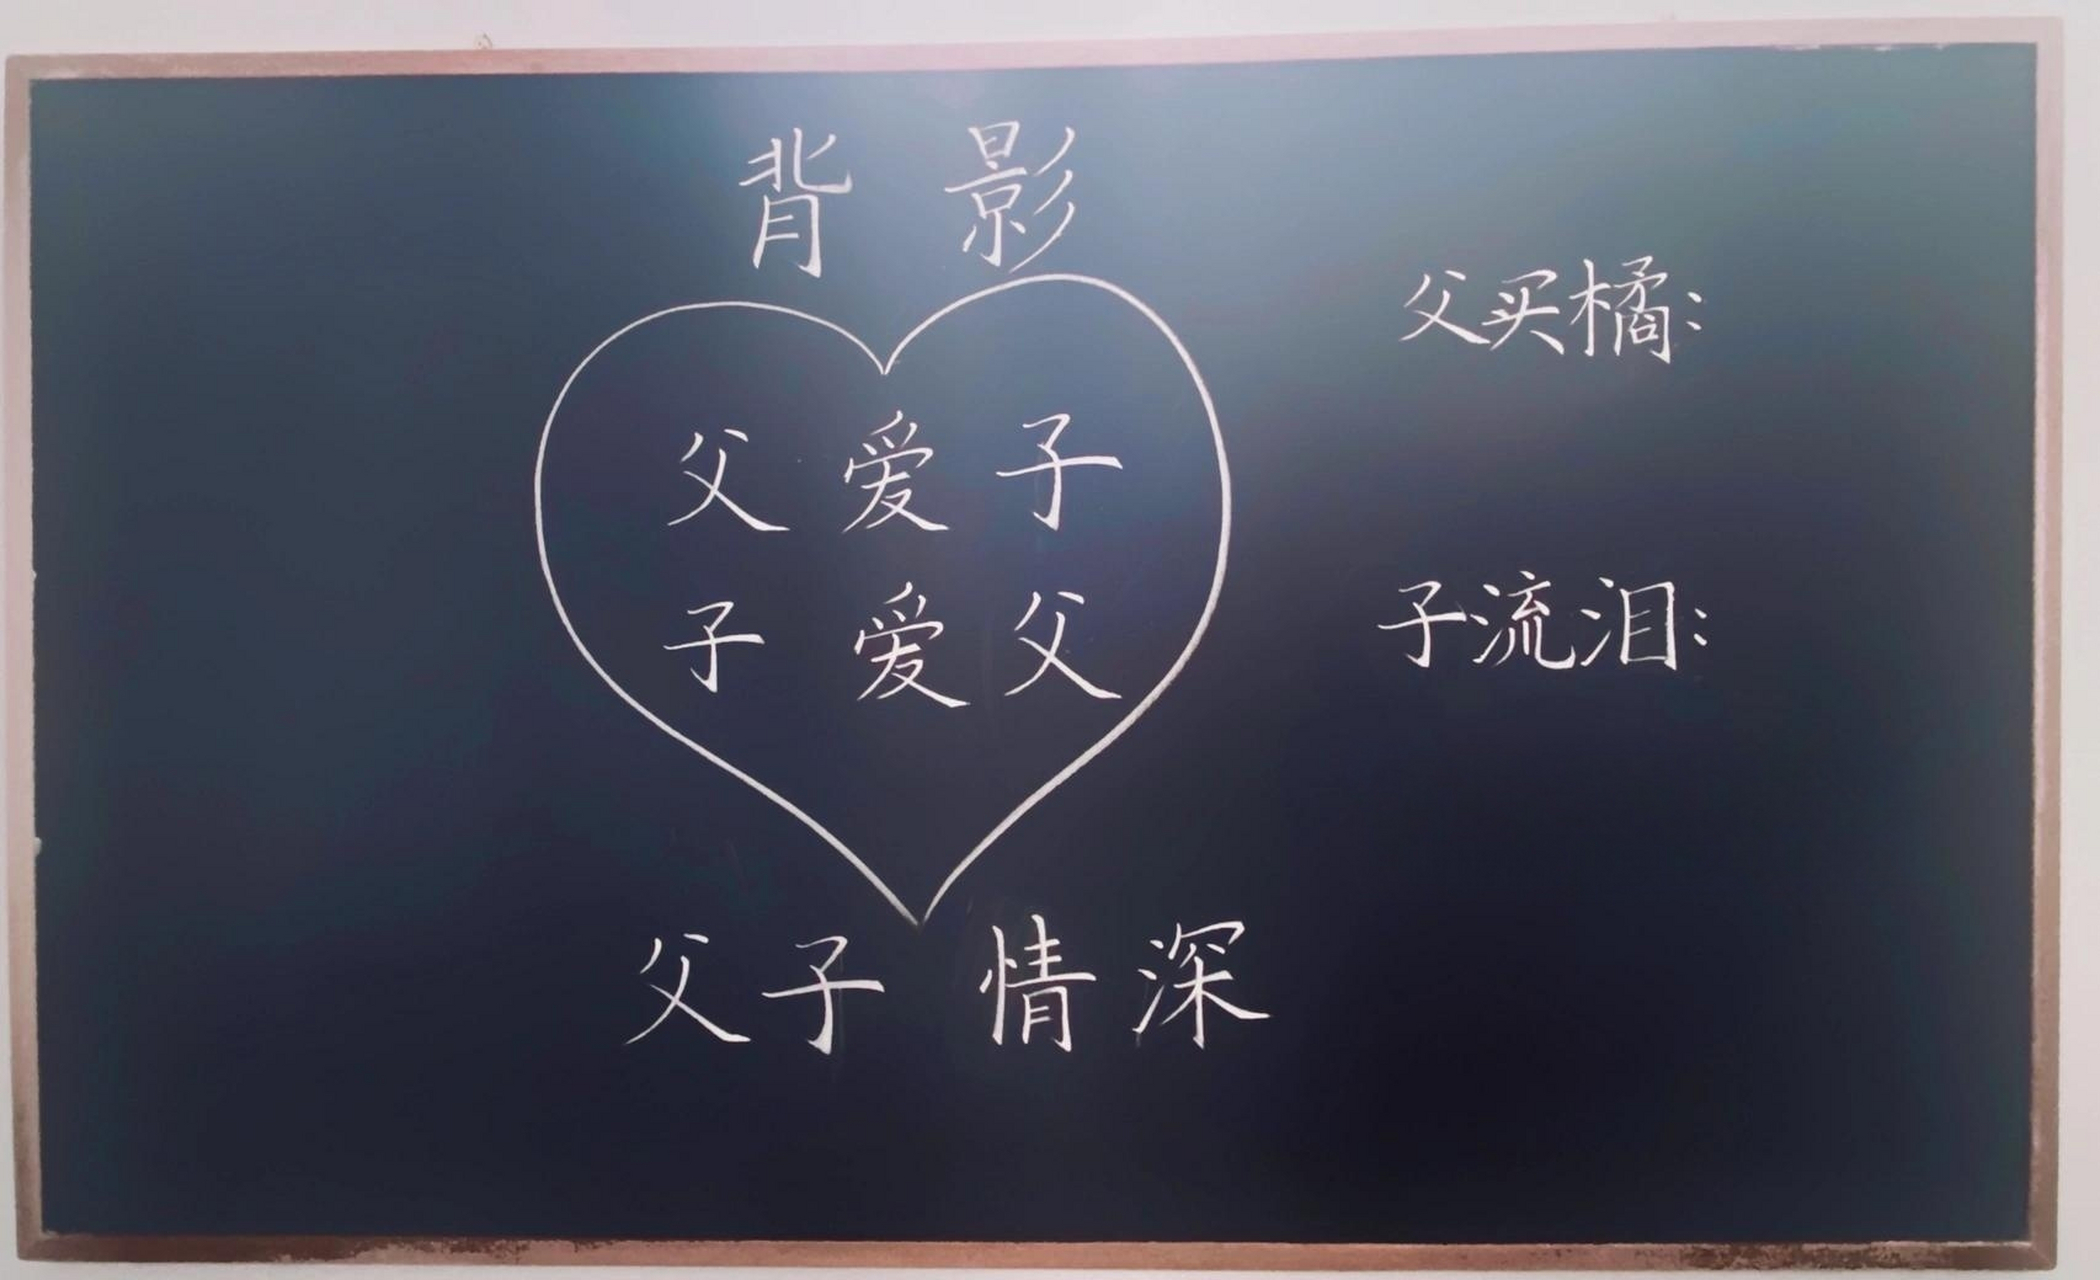 初中语文八年级上板书设计:背影 98导入:可以用《父亲的散文诗》,会